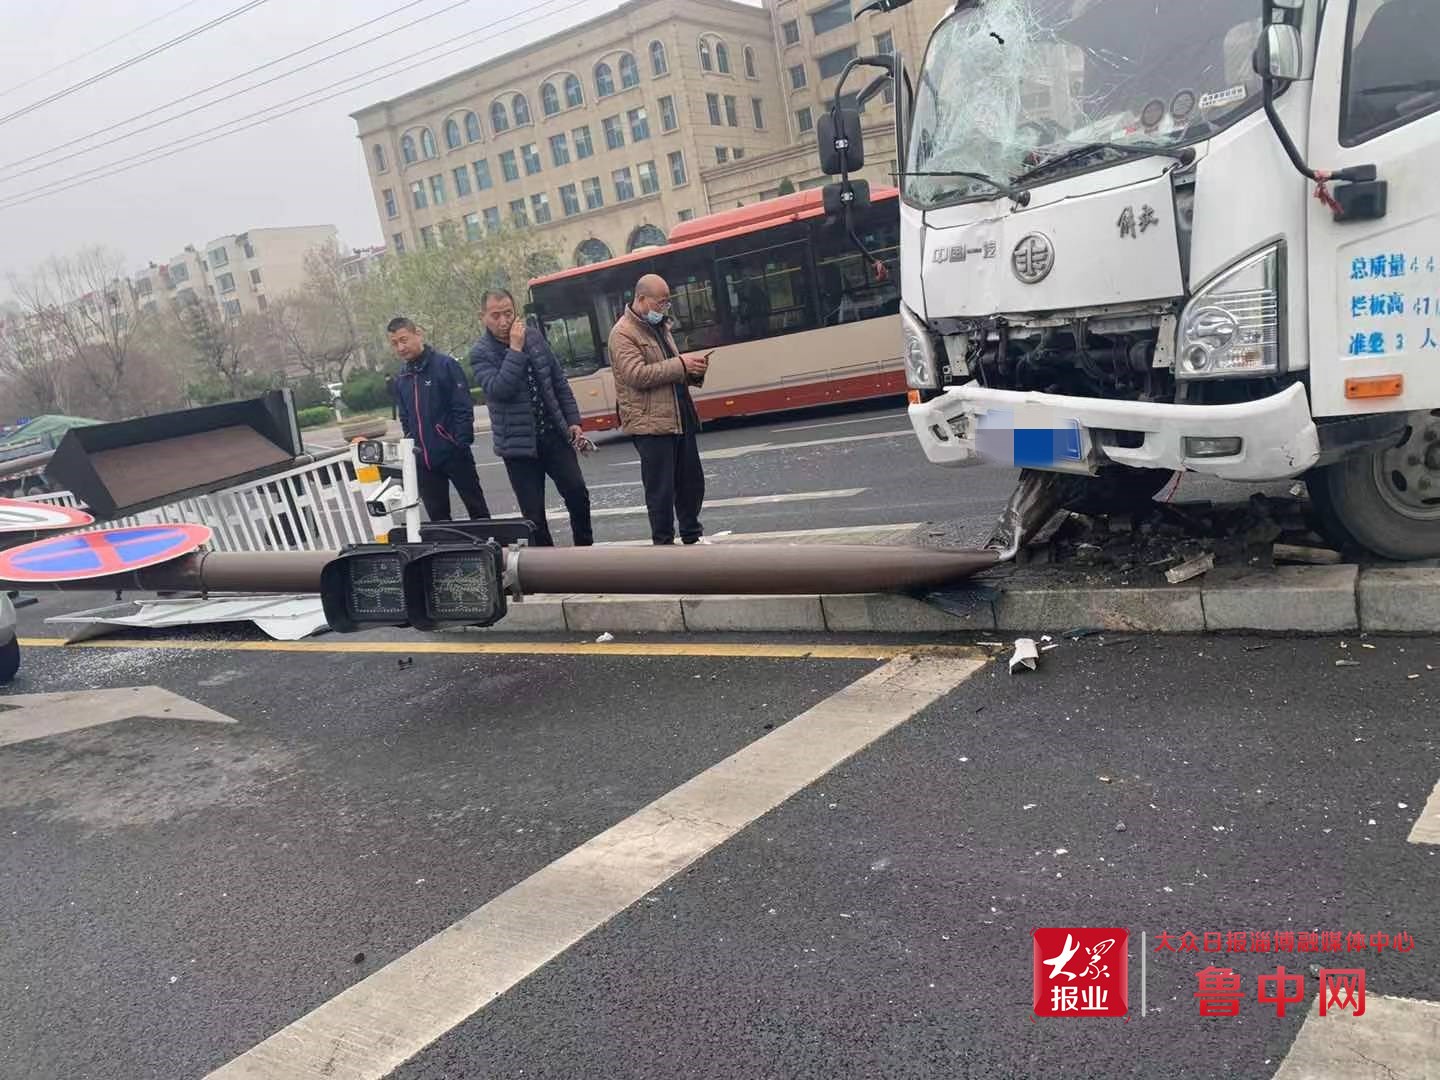 路線バス2台と乗用車が絡む事故 1人死亡 横浜・桜木町 - 産経ニュース